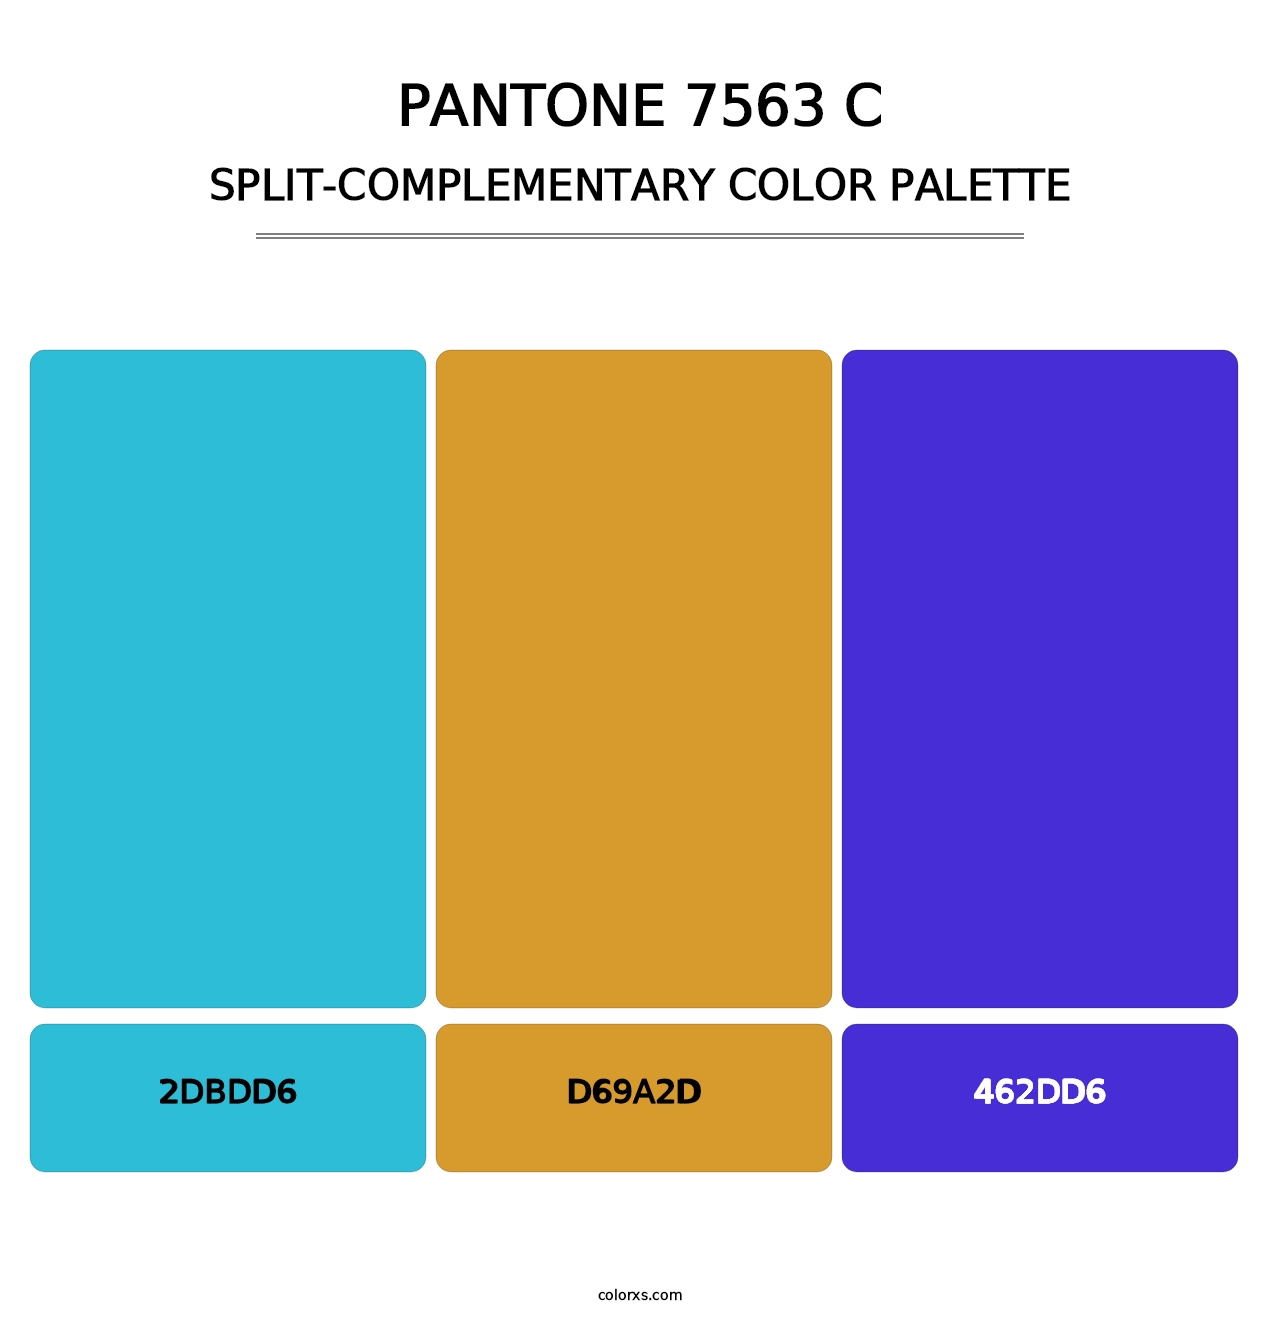 PANTONE 7563 C - Split-Complementary Color Palette